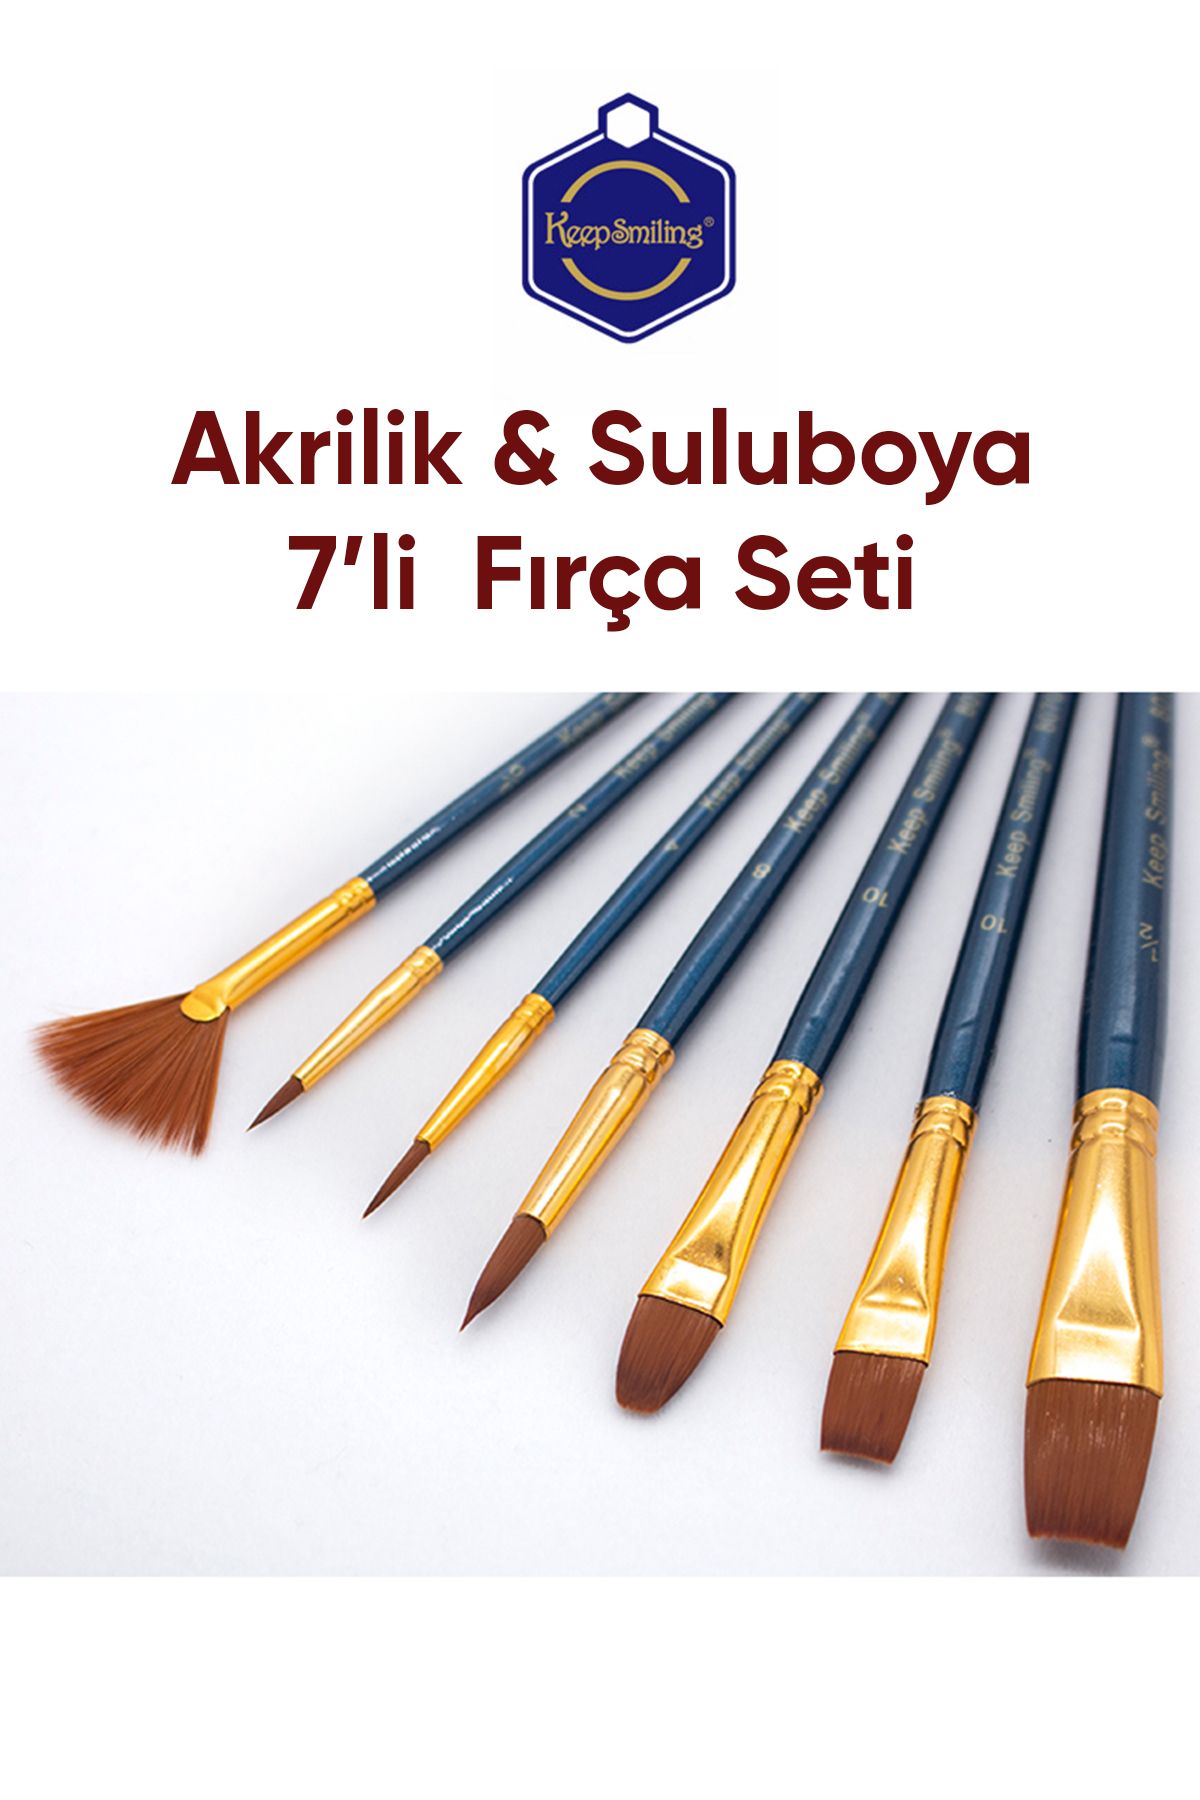 Vox Art Fırça Seti - 7'li Suluboya -Akrilik Boya Fırça Seti